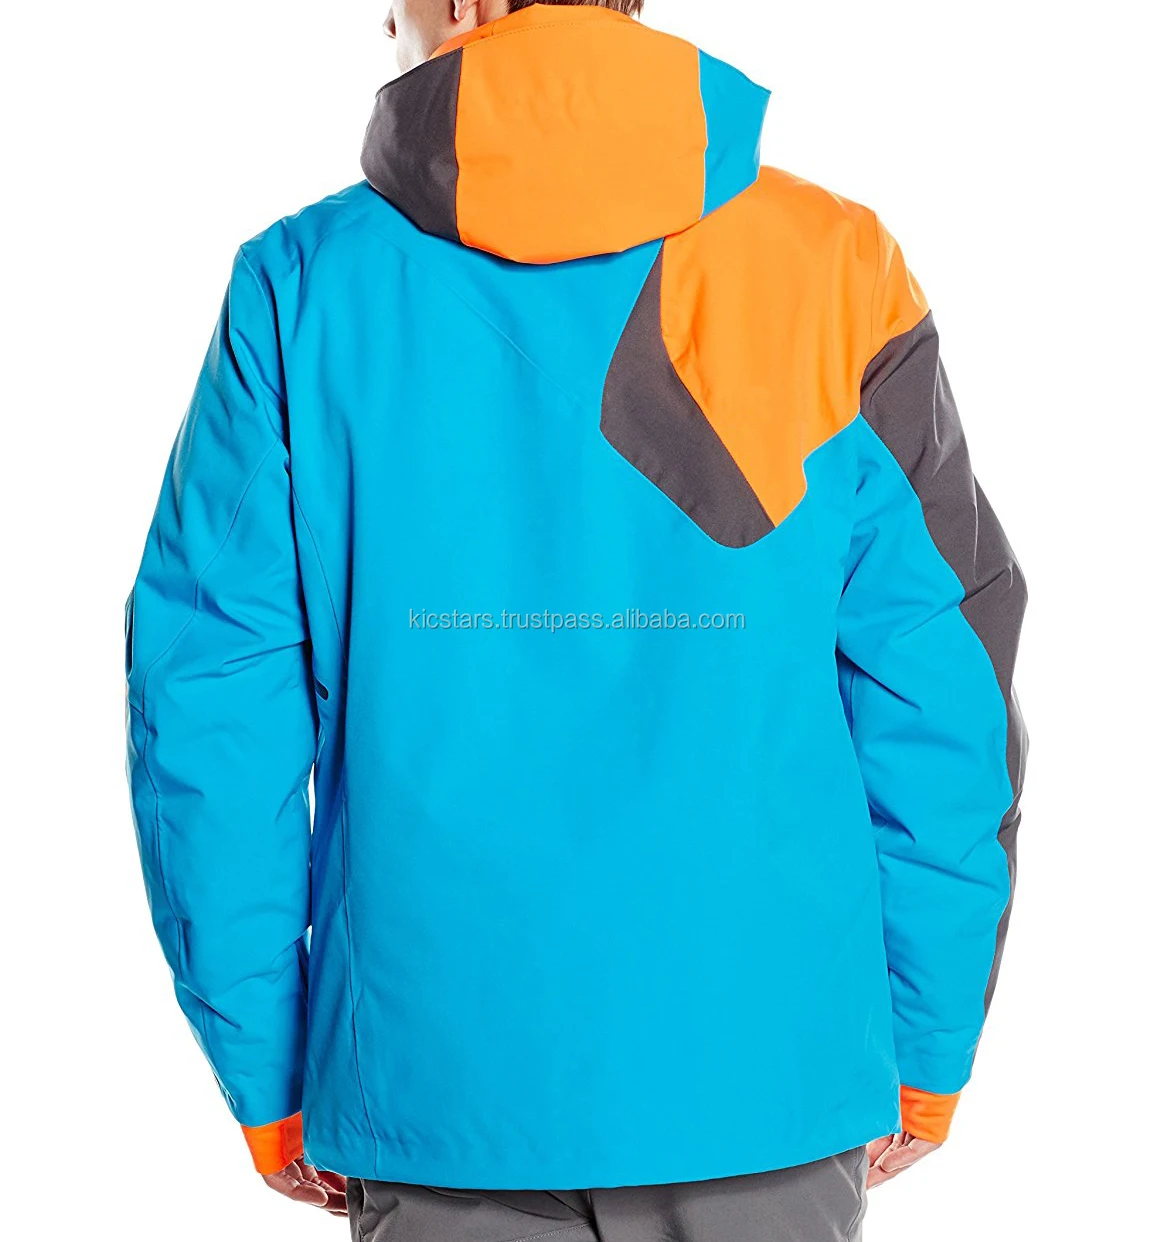 メンズアウトドアファッション冬用ジャケット Buy 屋外ジャケット 男性冬のジャケットスキー 極端な冬のジャケット Product On Alibaba Com